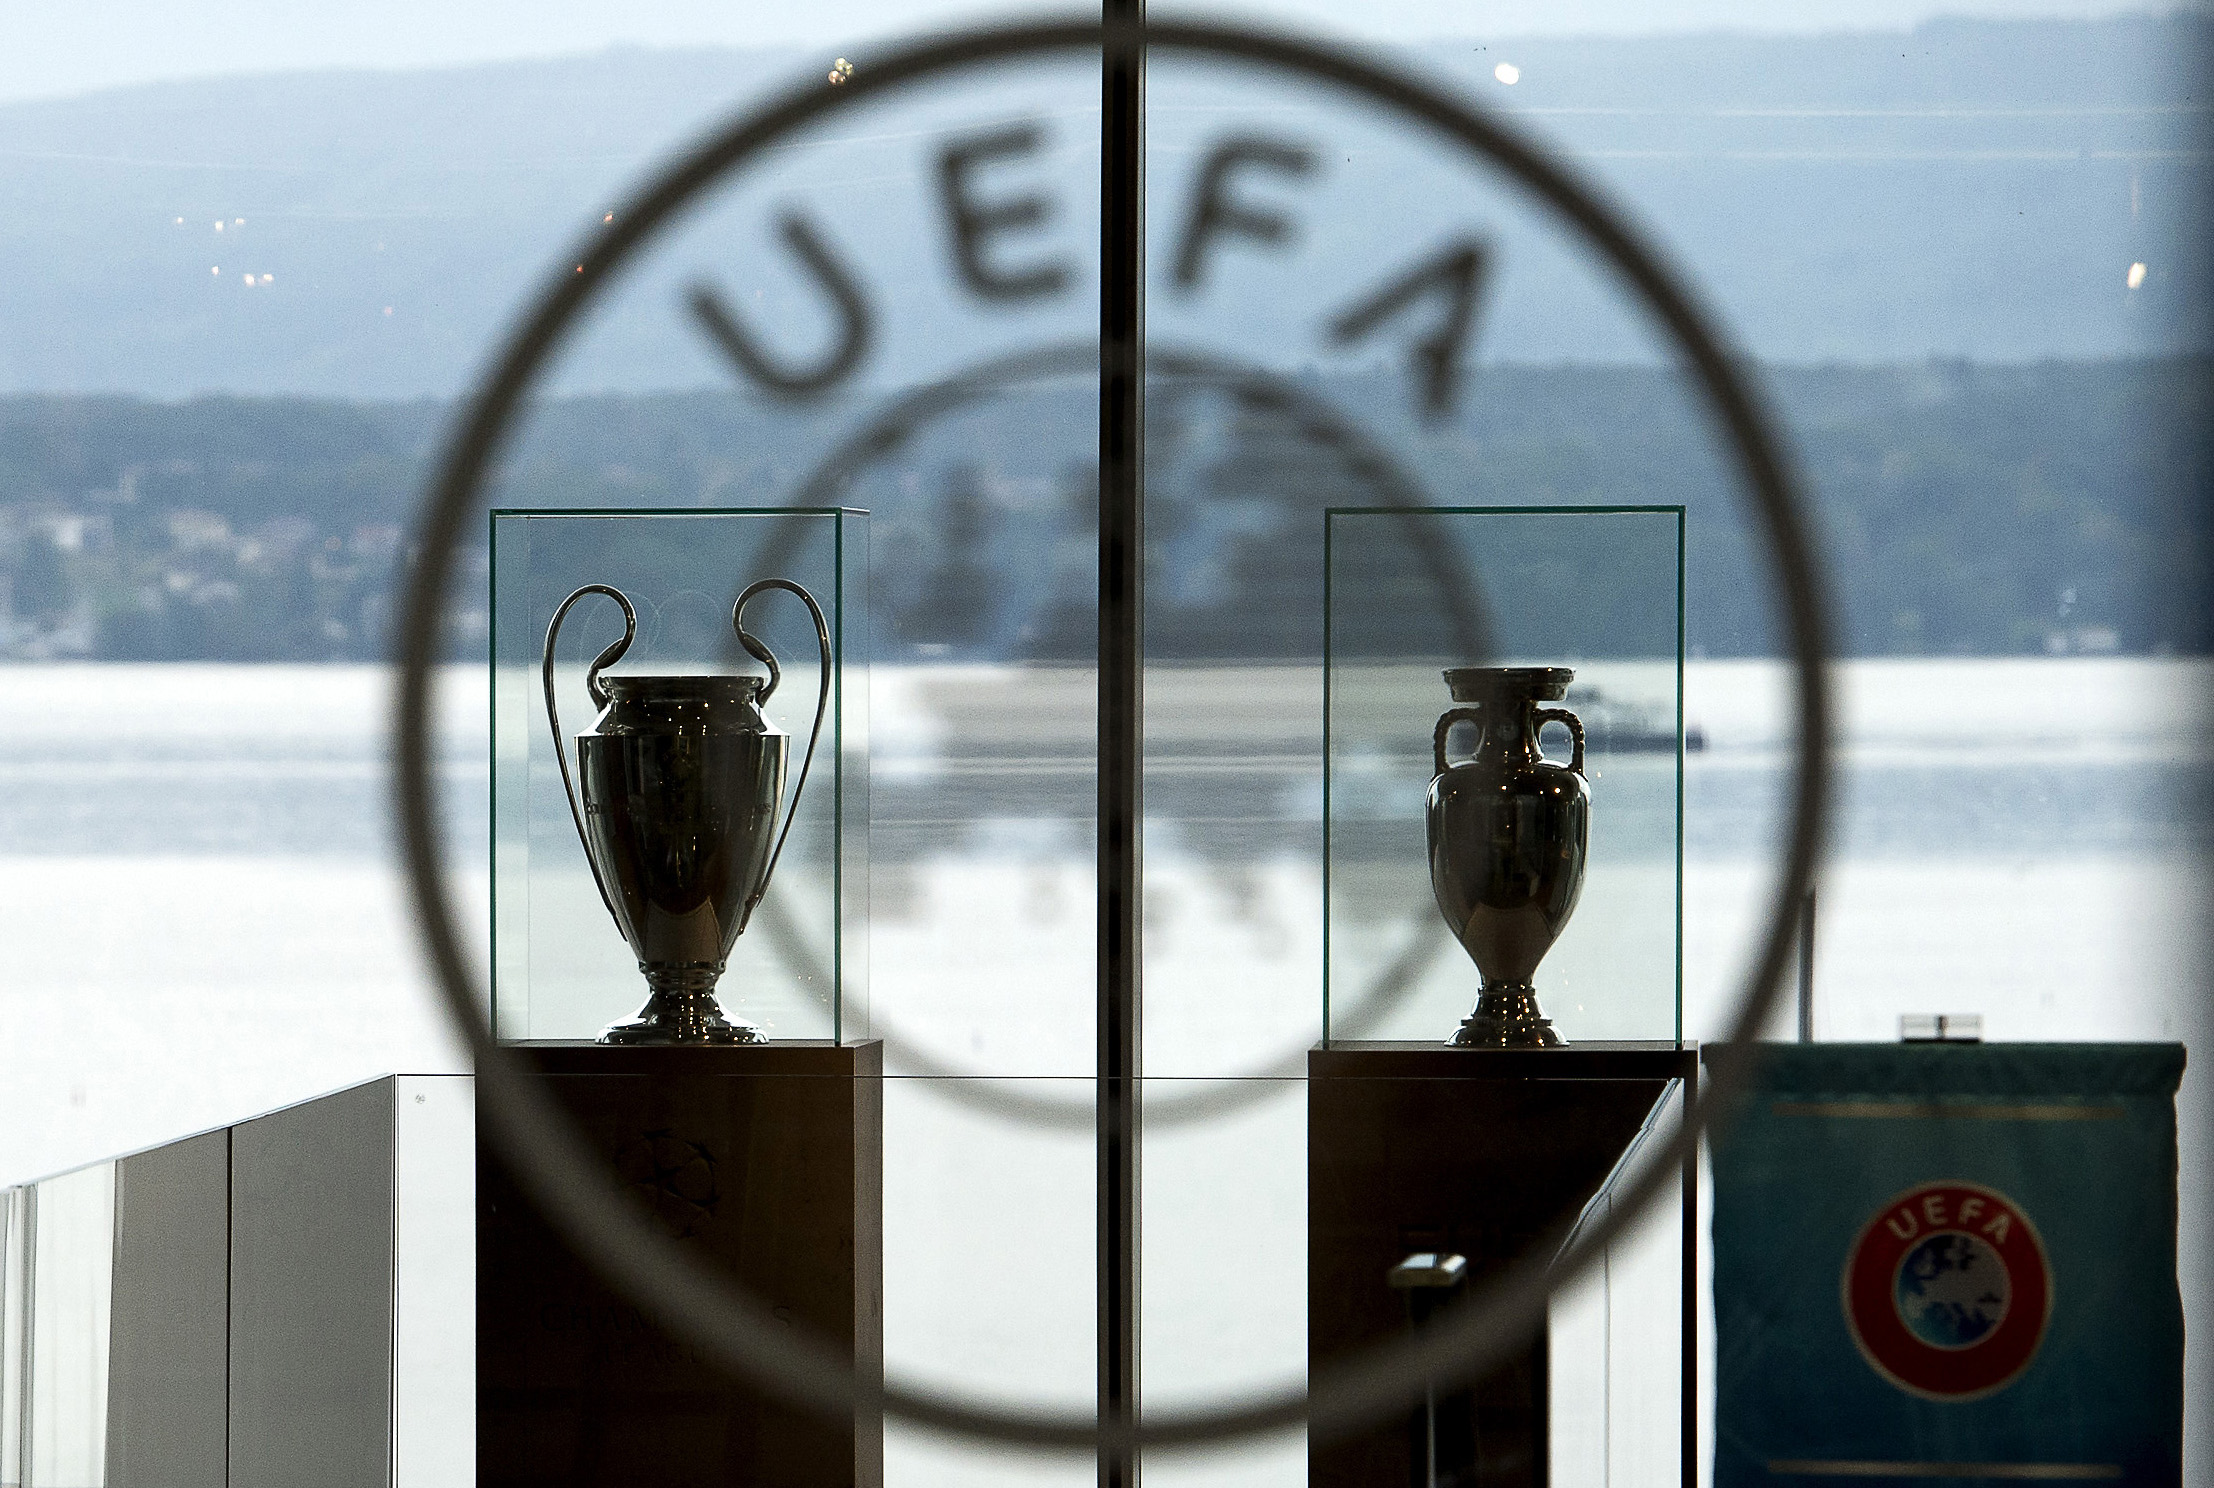 UEFA trofej